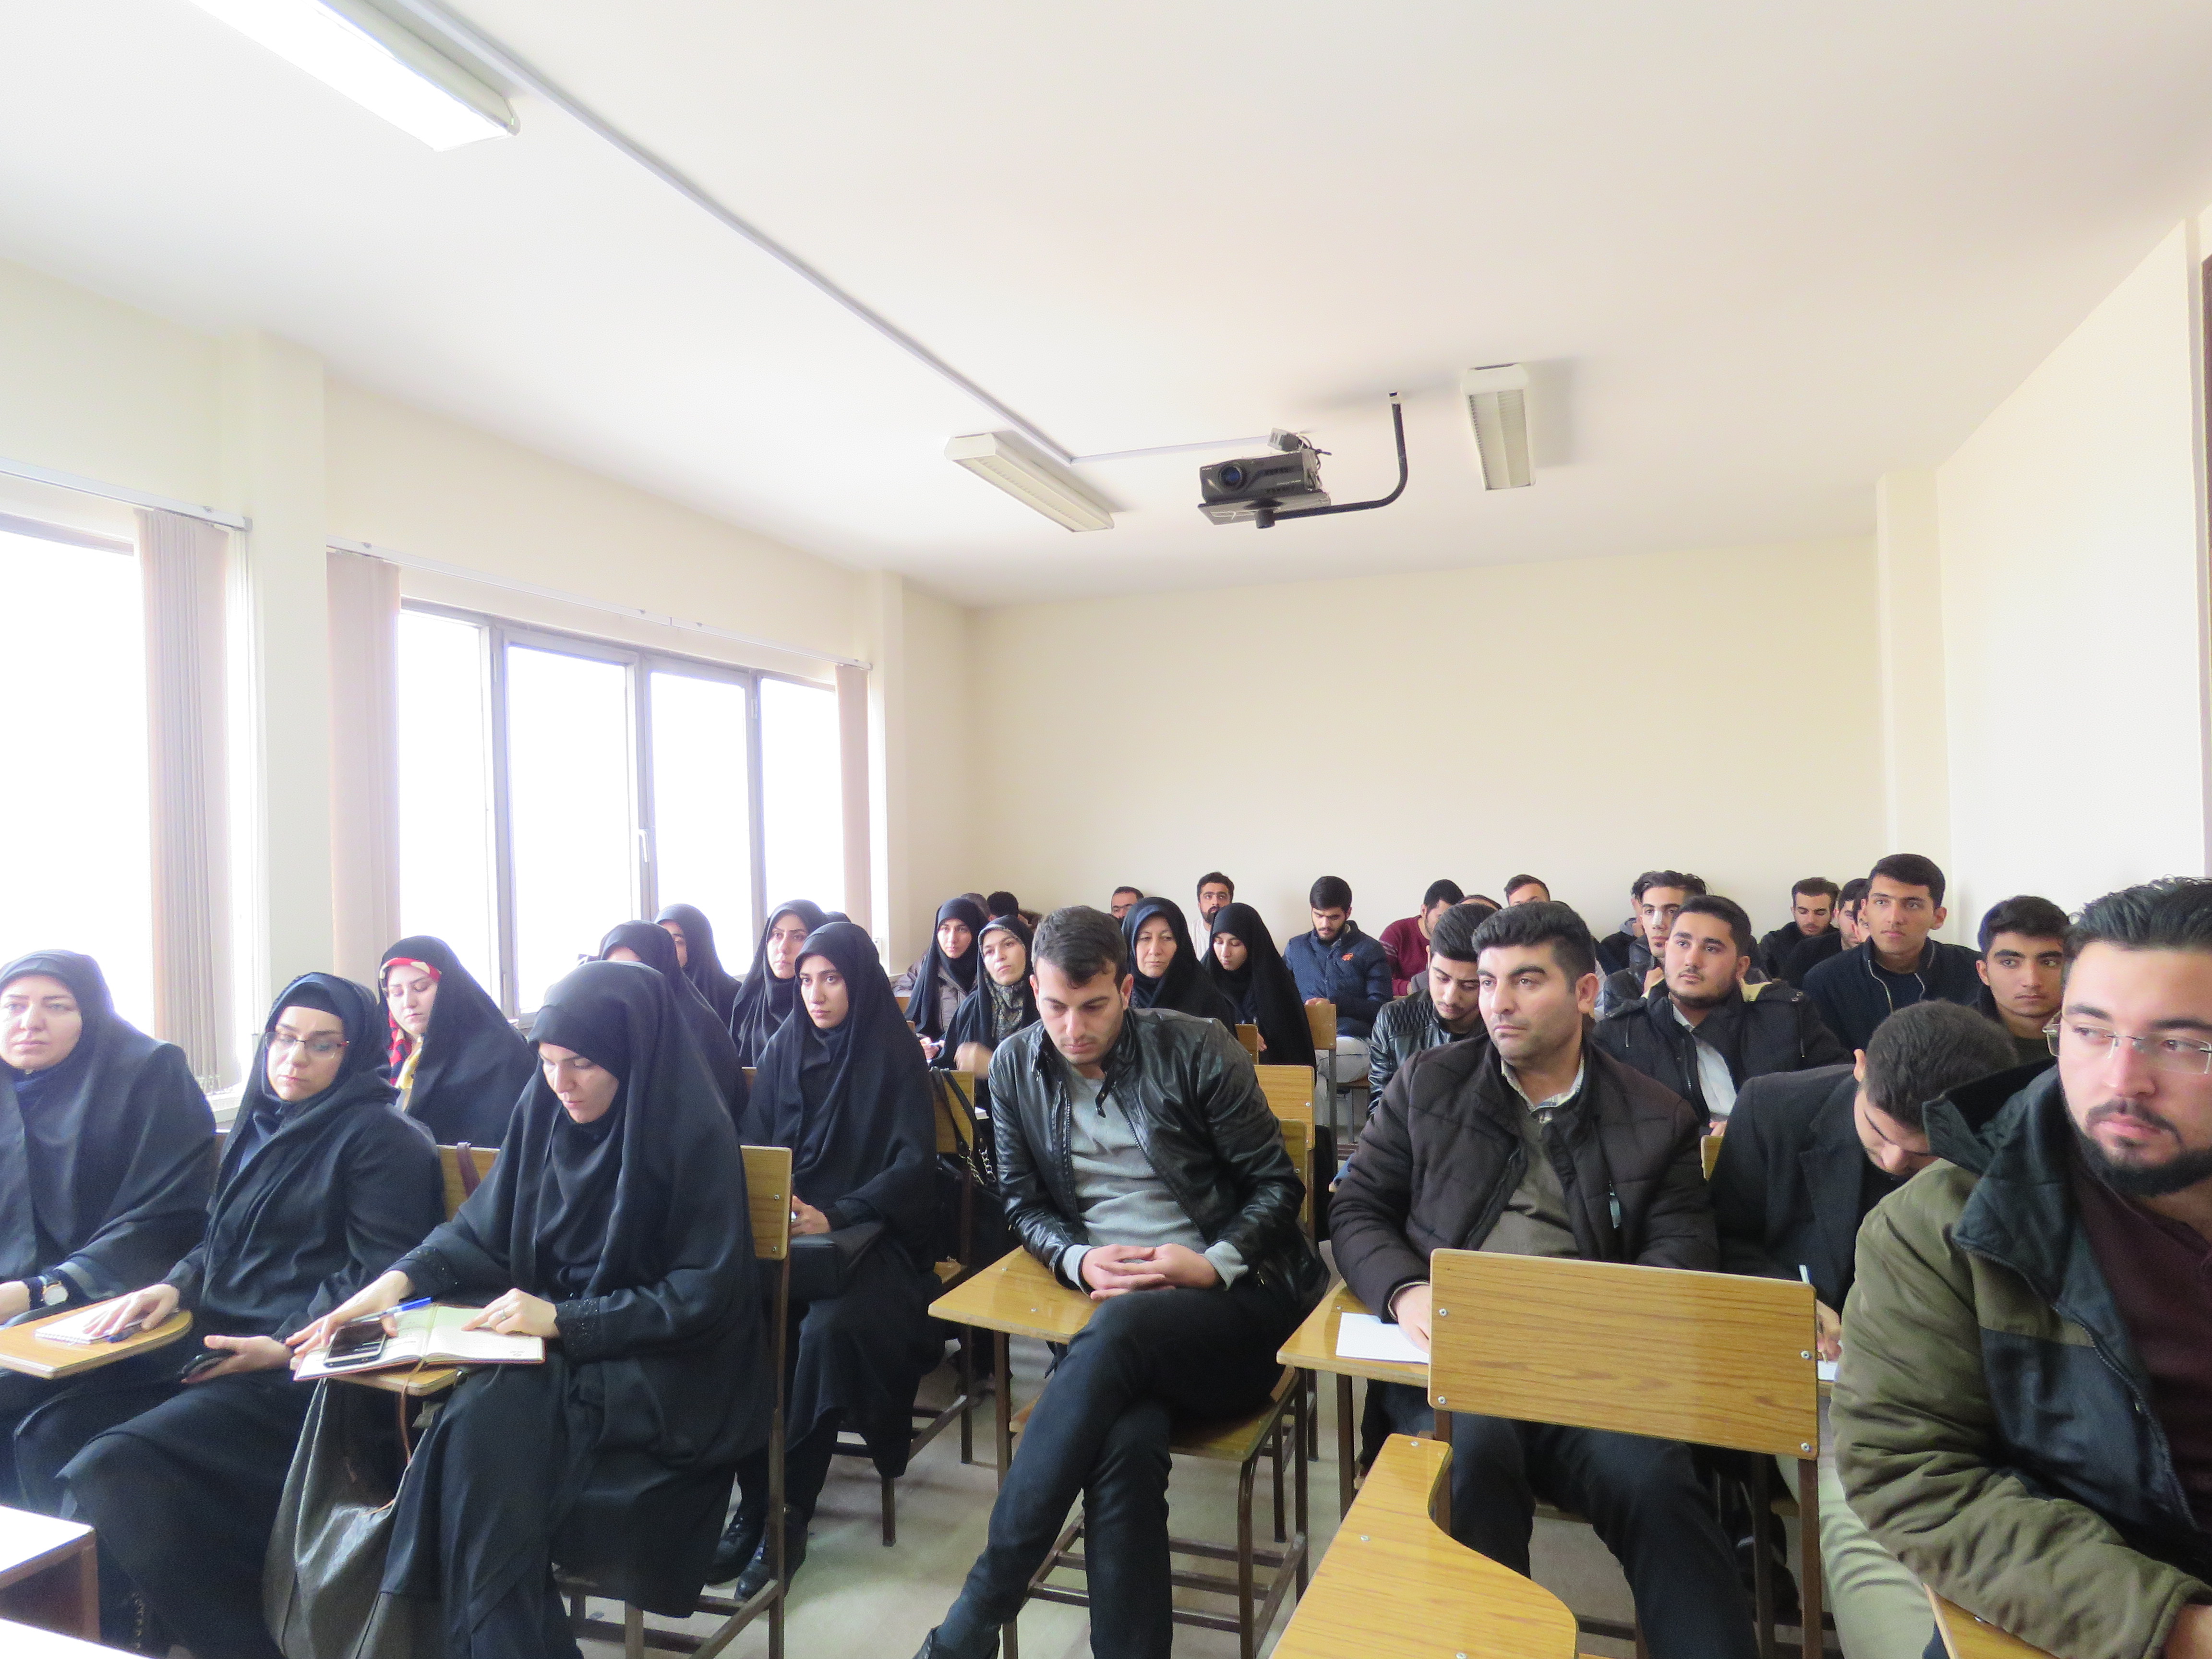 دوره آموزشی خبرنگاری ویژه بسیجیان در شهرستان ارومیه آغاز شد.